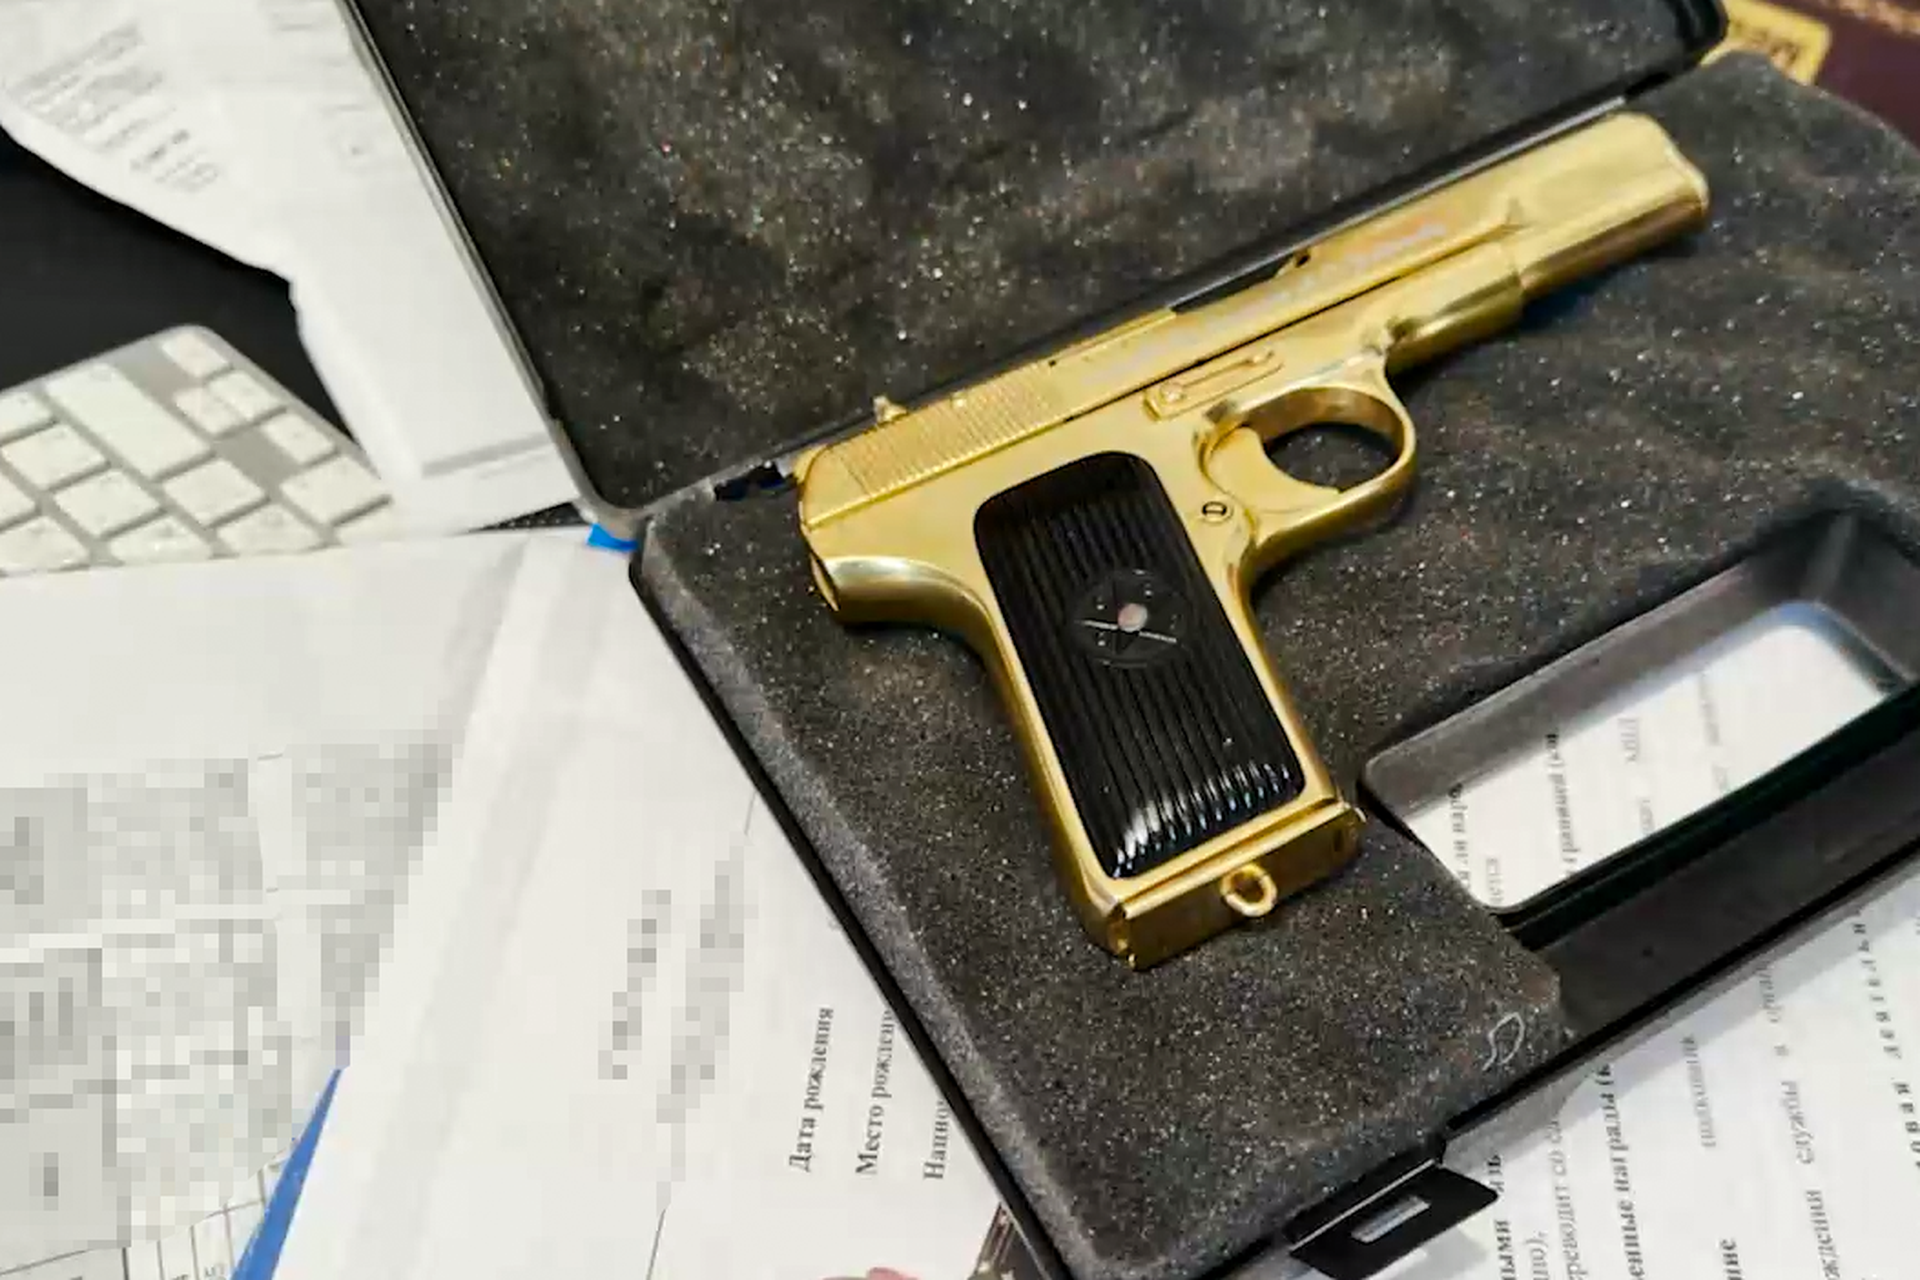 ФСБ показала золотой пистолет, машины и часы задержанных в КЧР чиновников